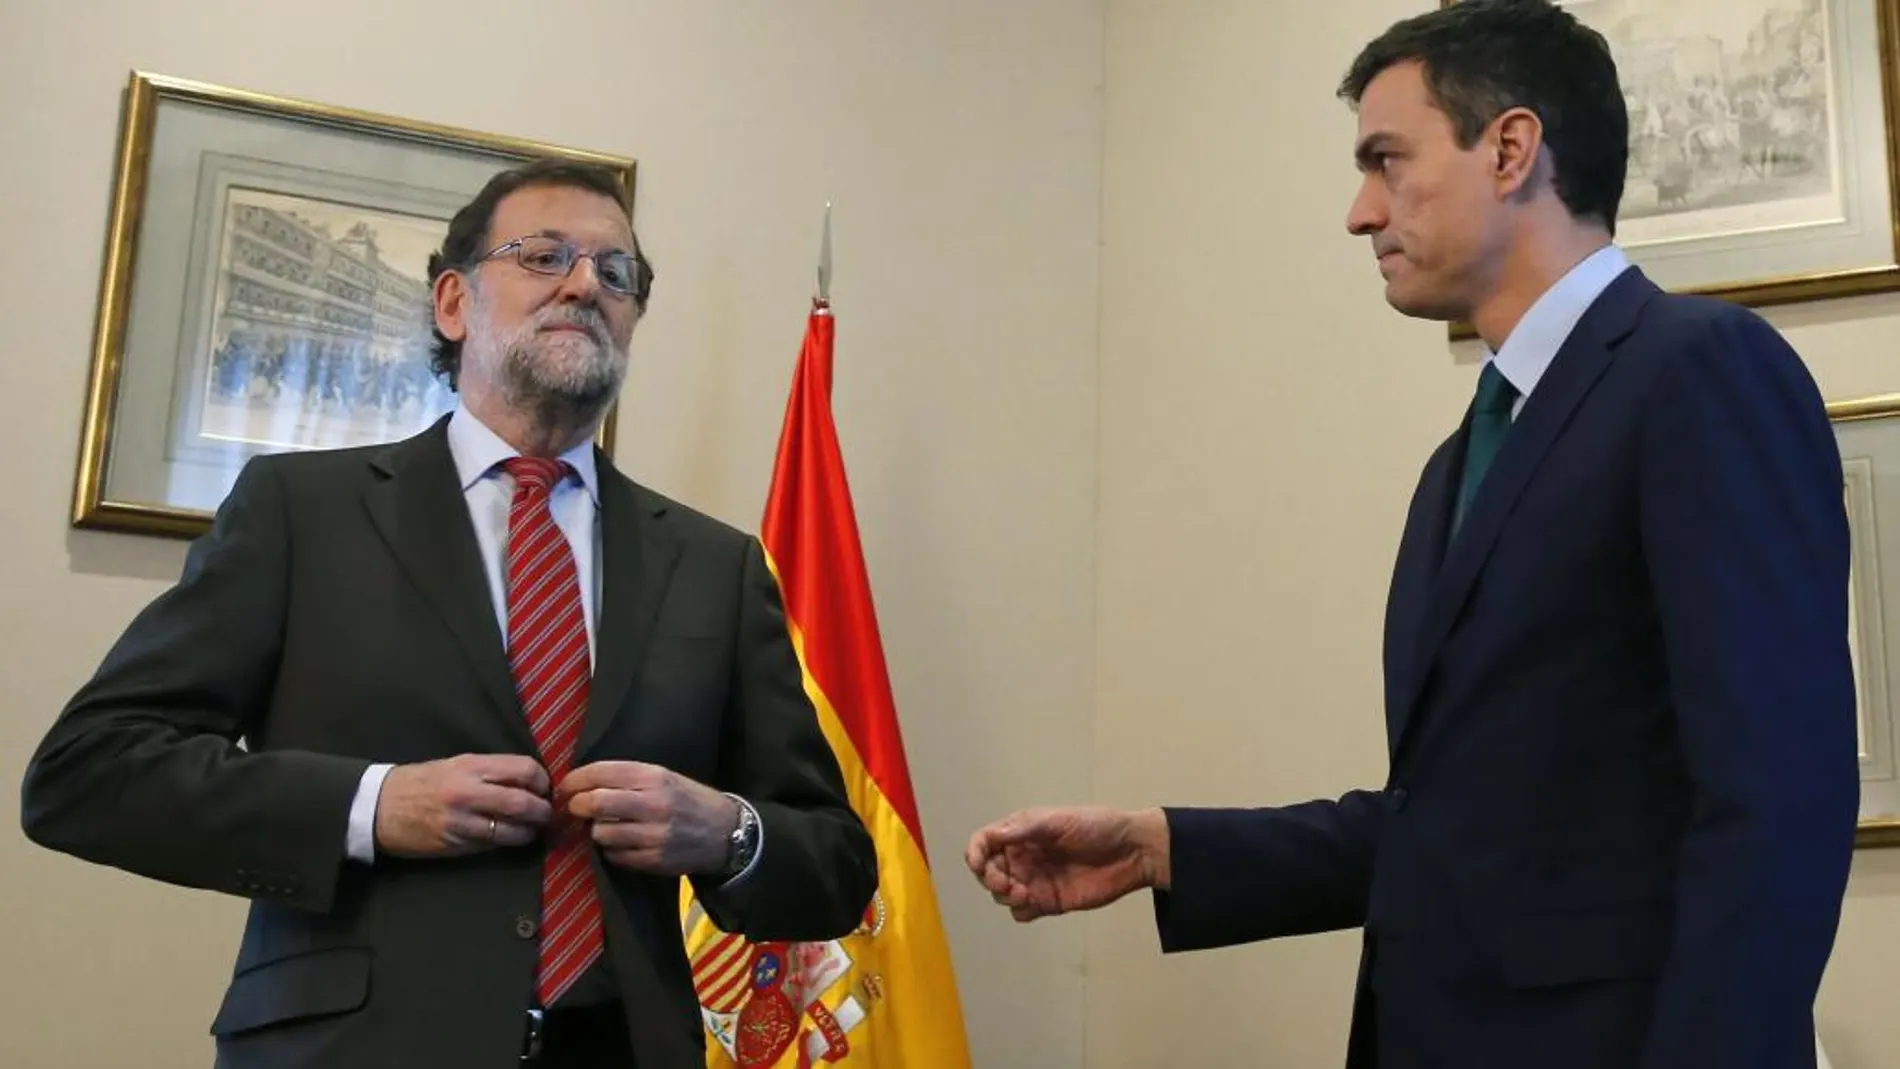 Momento del saludo entre Rajoy y Sánchez